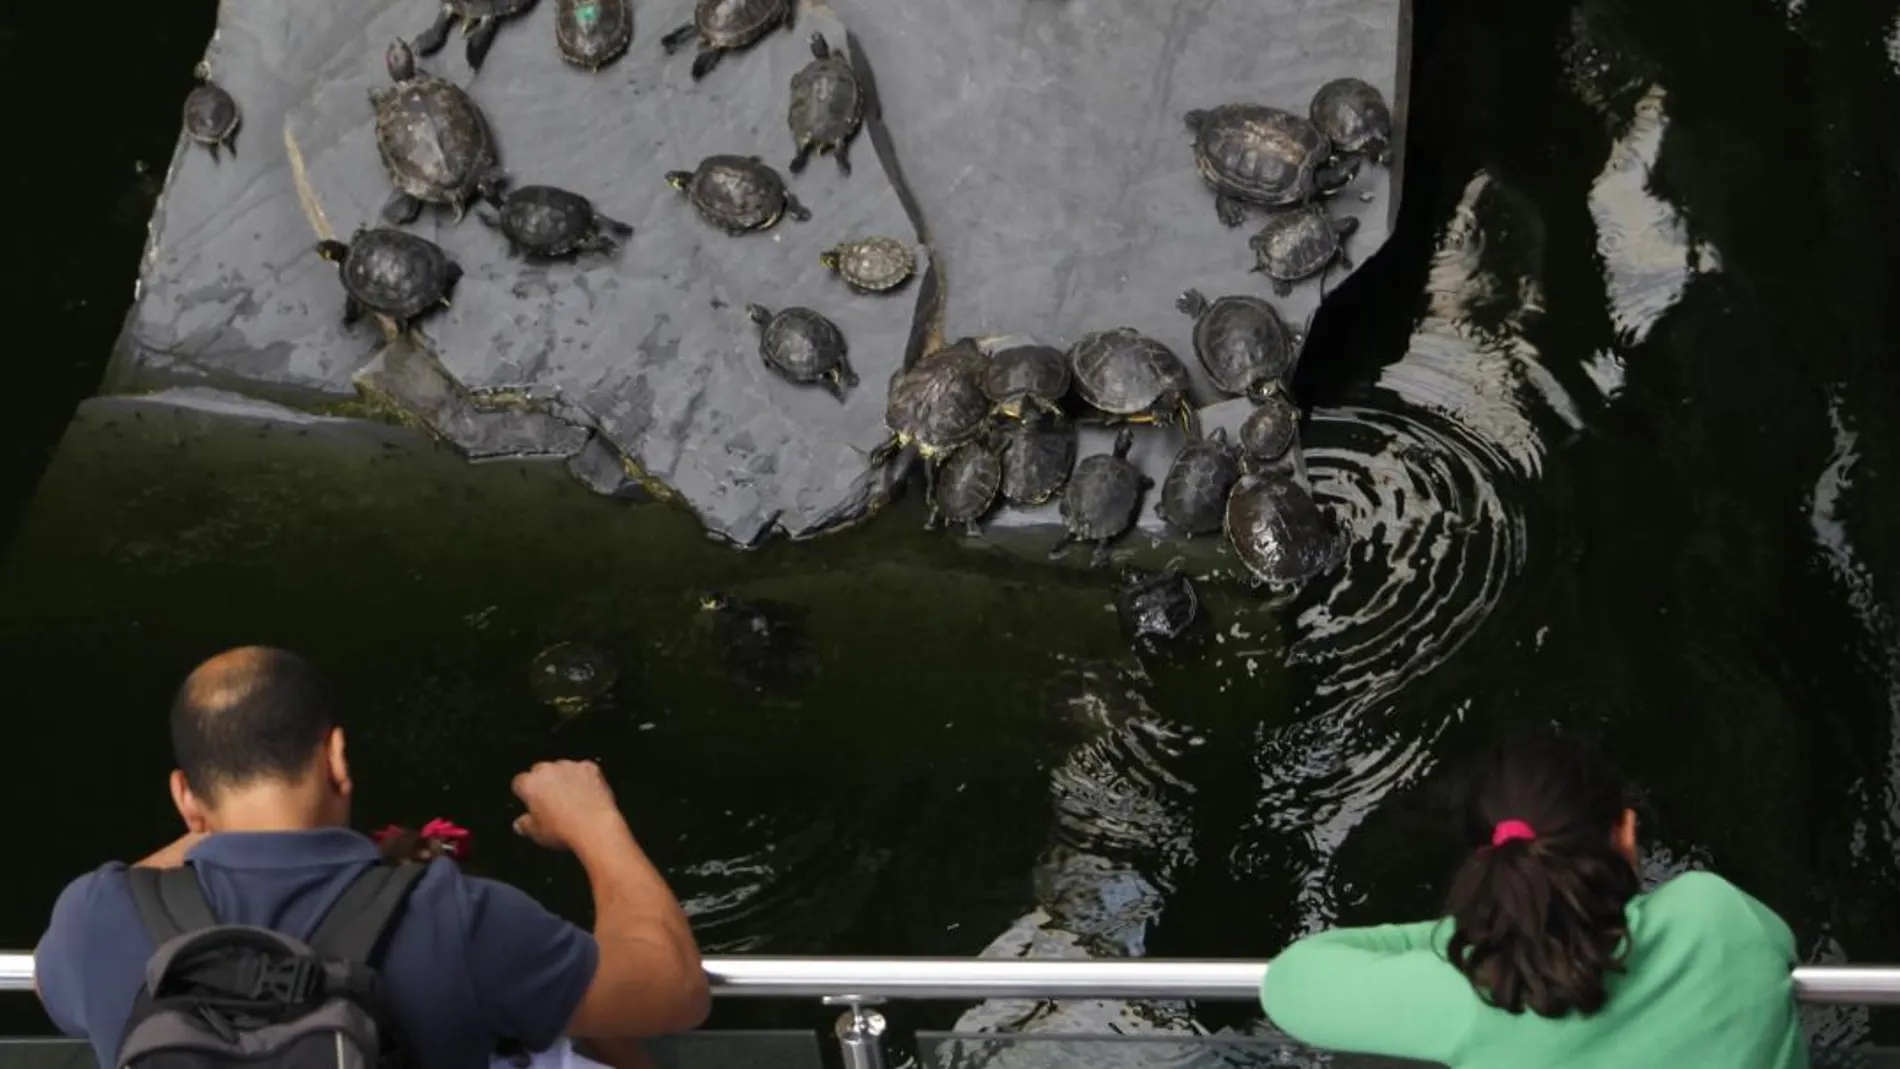 Las tortugas, abandonadas por sus propietarios en el estanque, pertenecen en su mayoría a especies catalogadas como exóticas e invasoras